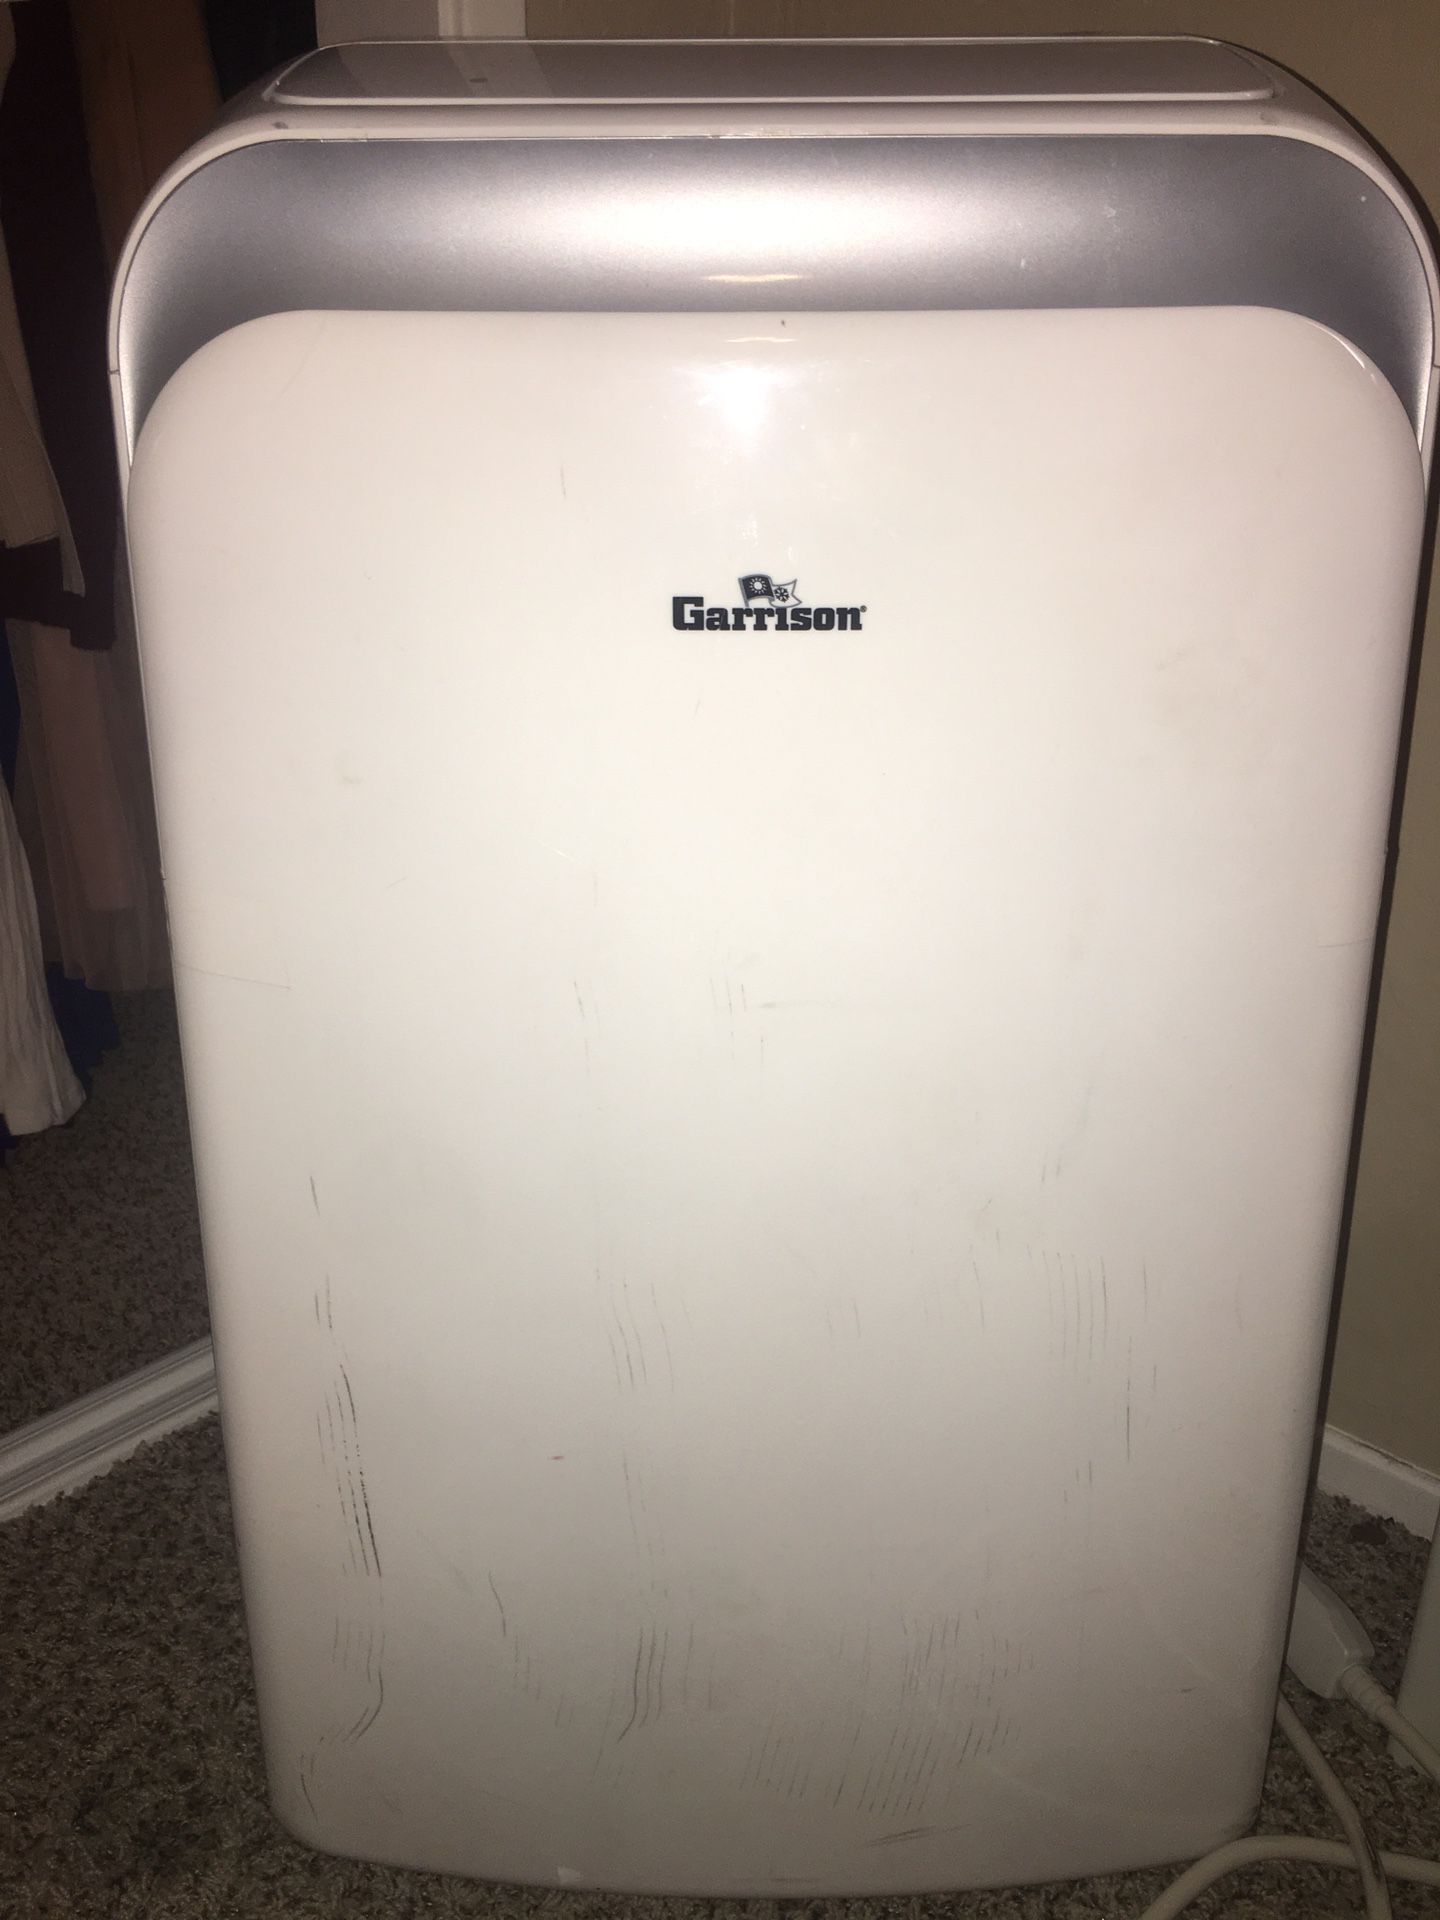 Garrison air conditioner $300